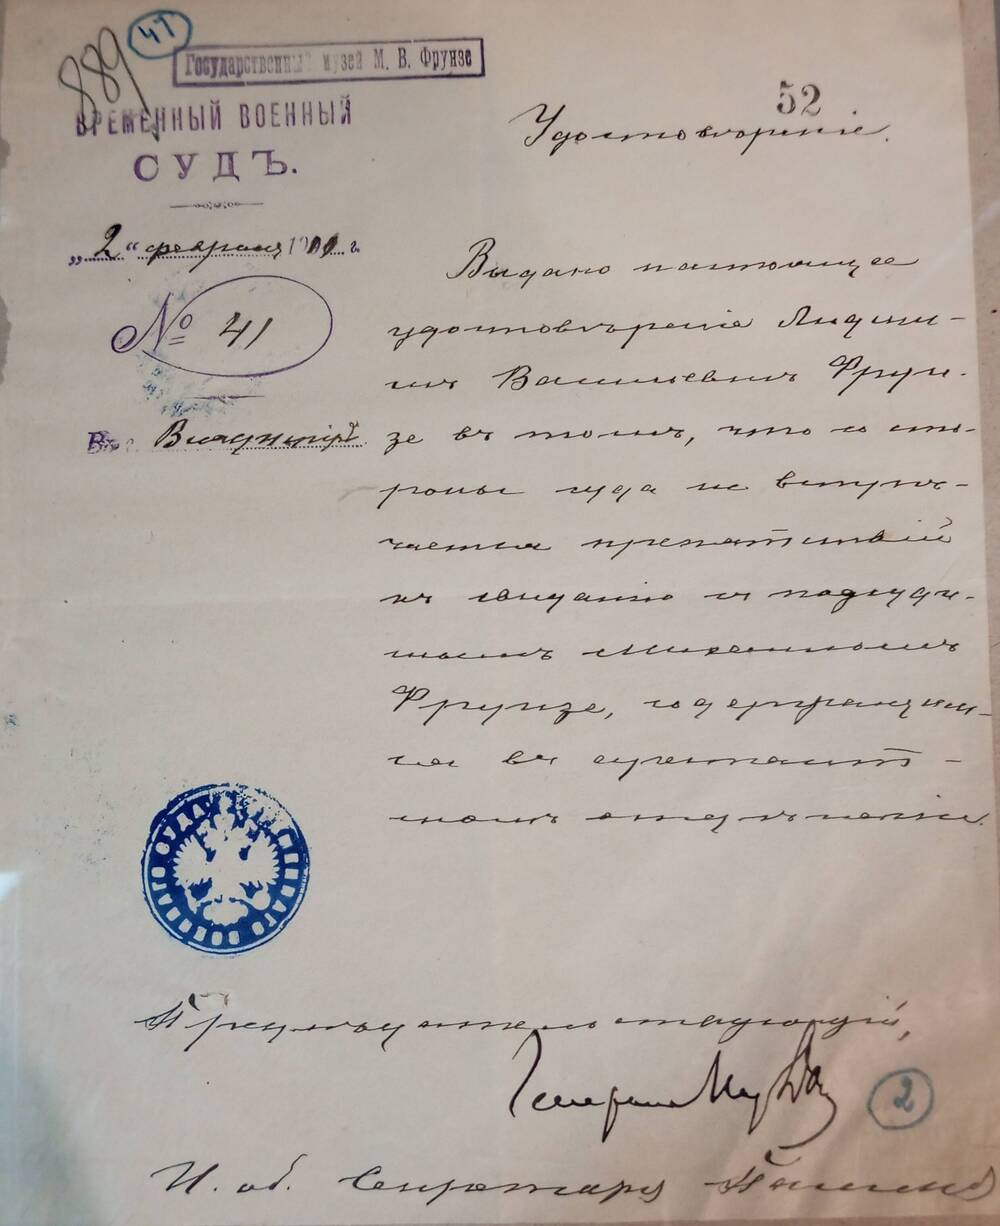 Удостоверение № 41, выданное Временным военным судом Людмиле Фрунзе